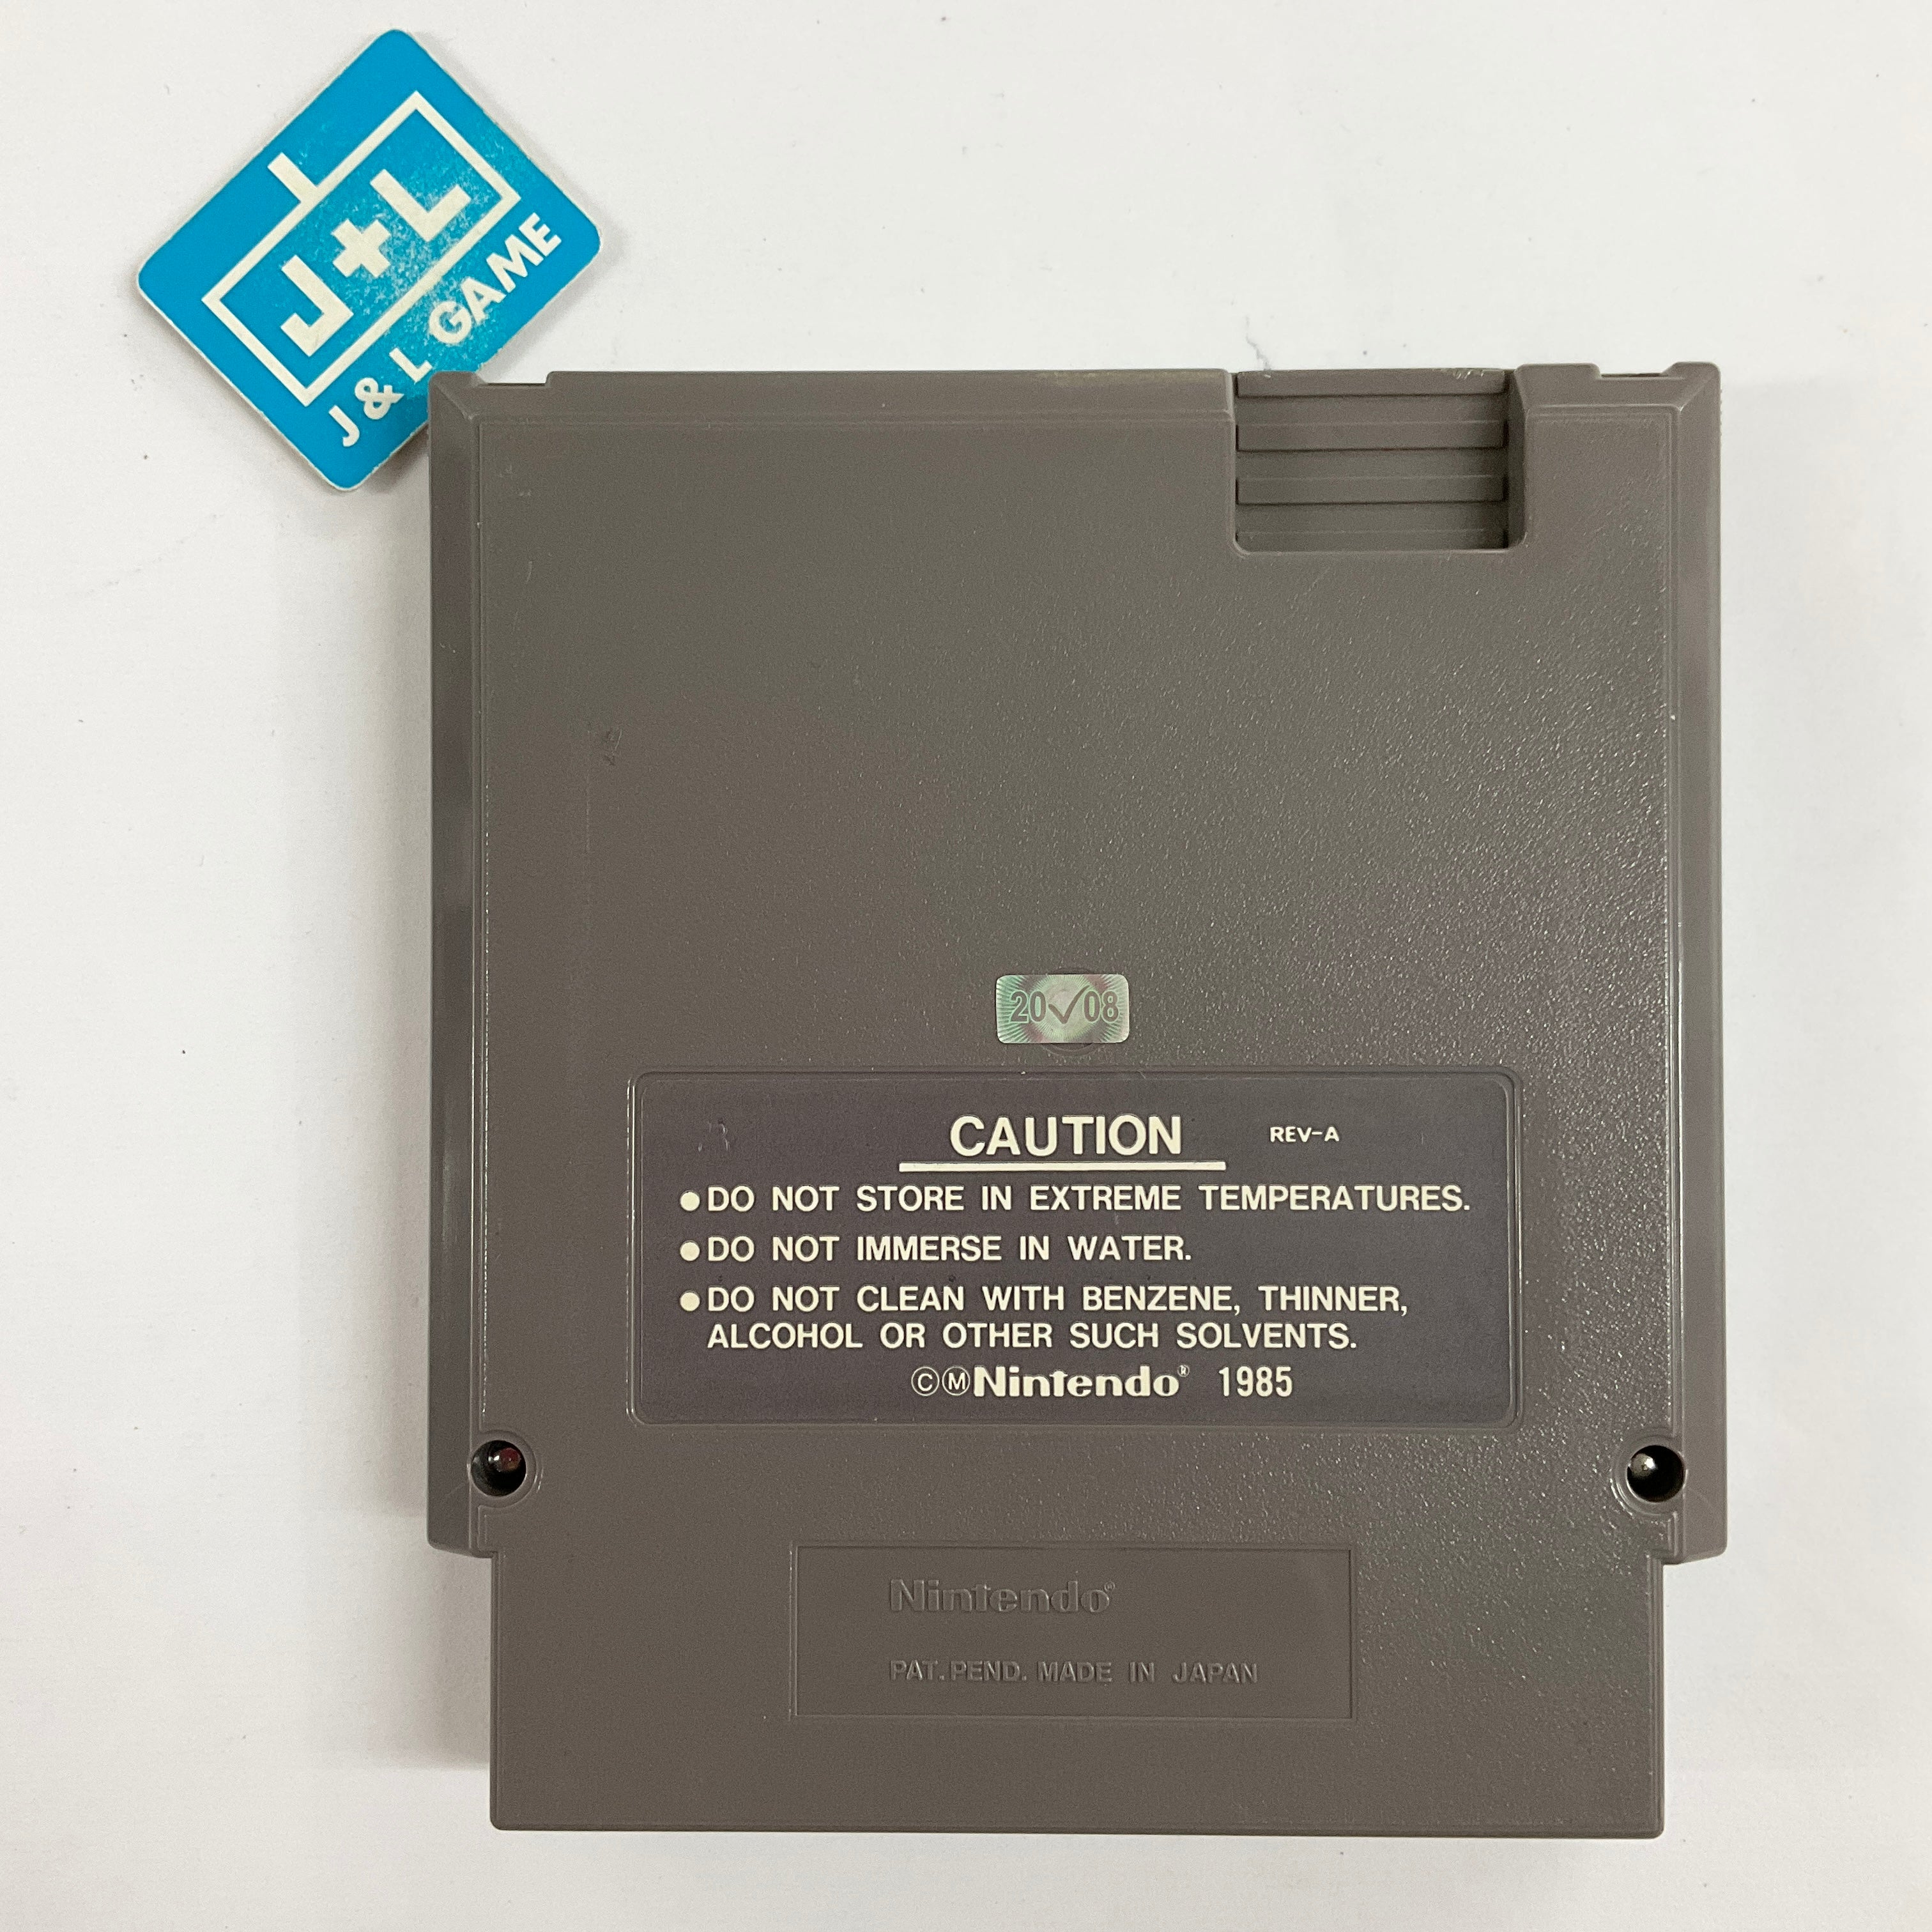 Mega Man 2 - (NES) Nintendo Entertainment System  [Pre-Owned] Video Games Capcom   